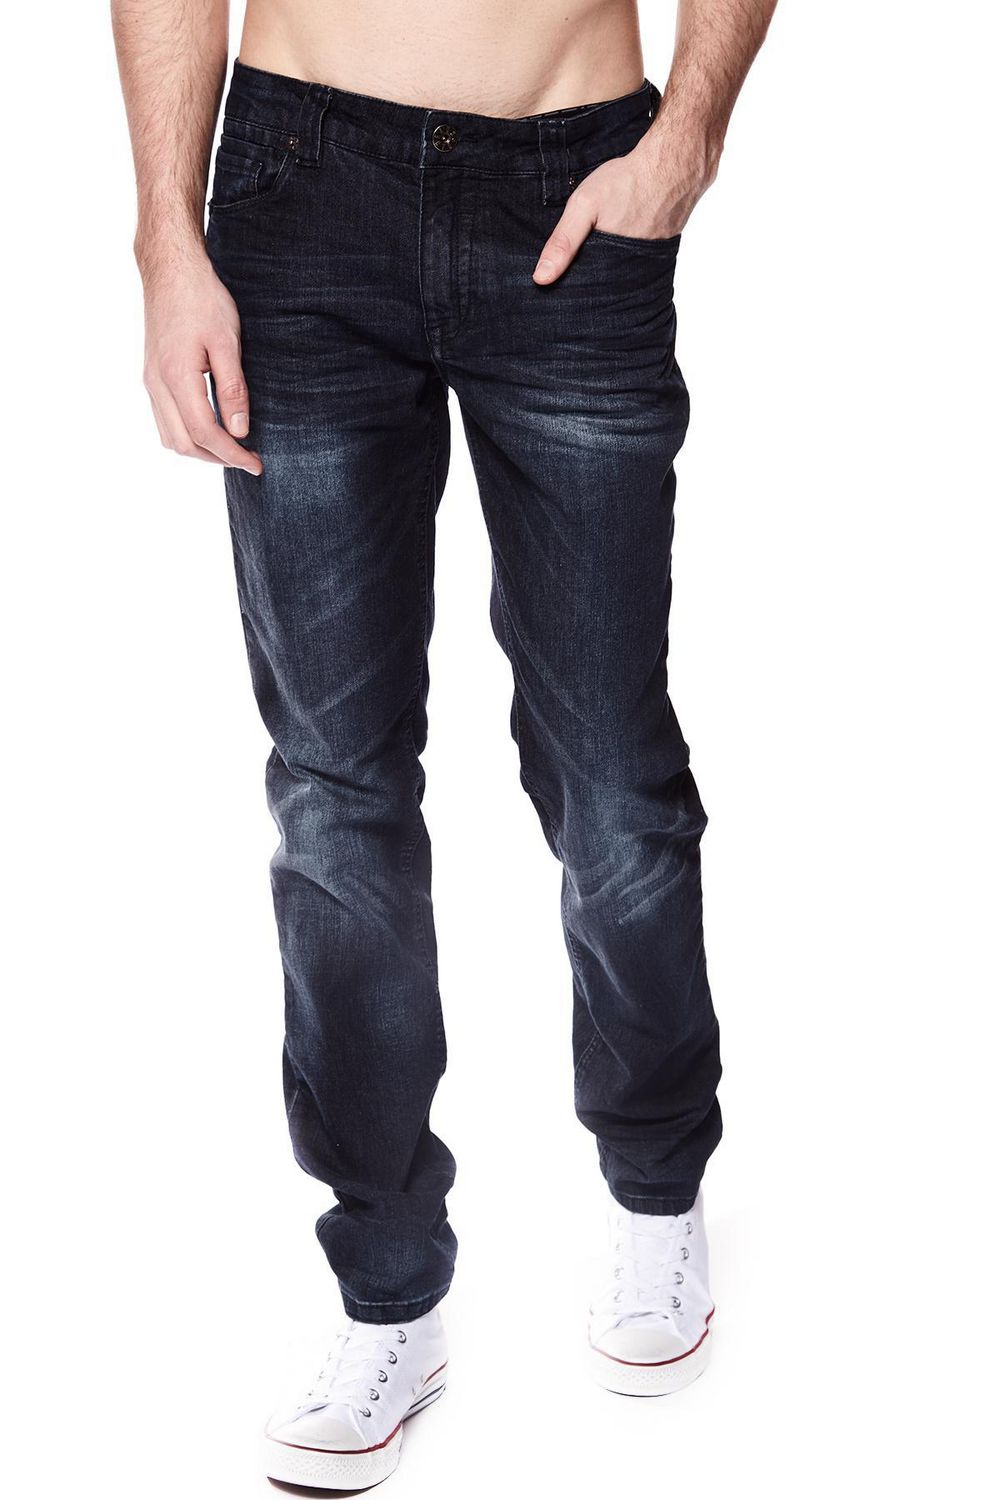 Jeaniologie ™ Men straight Jeans | Walmart Canada